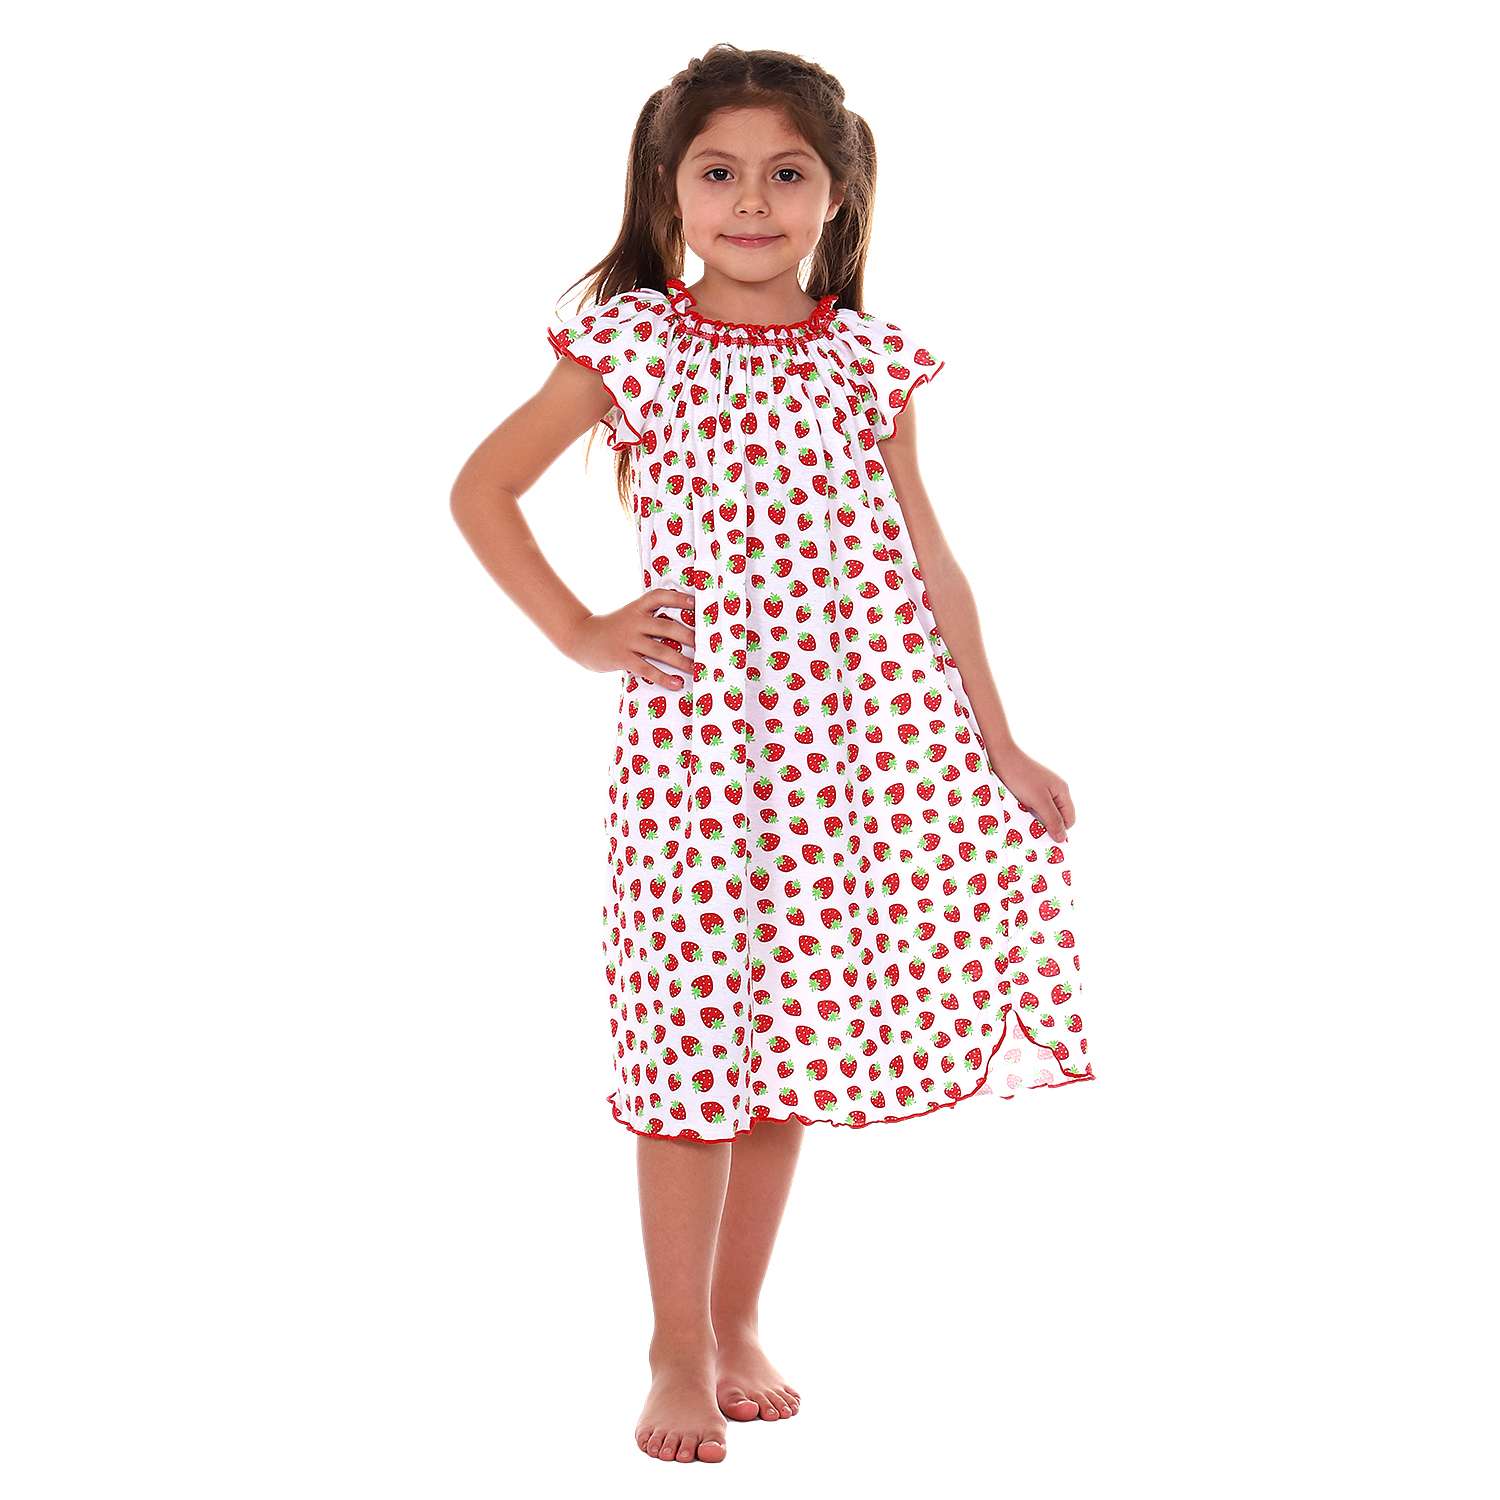 Сорочка ночная Детская Одежда 0003К/красный2 - фото 2